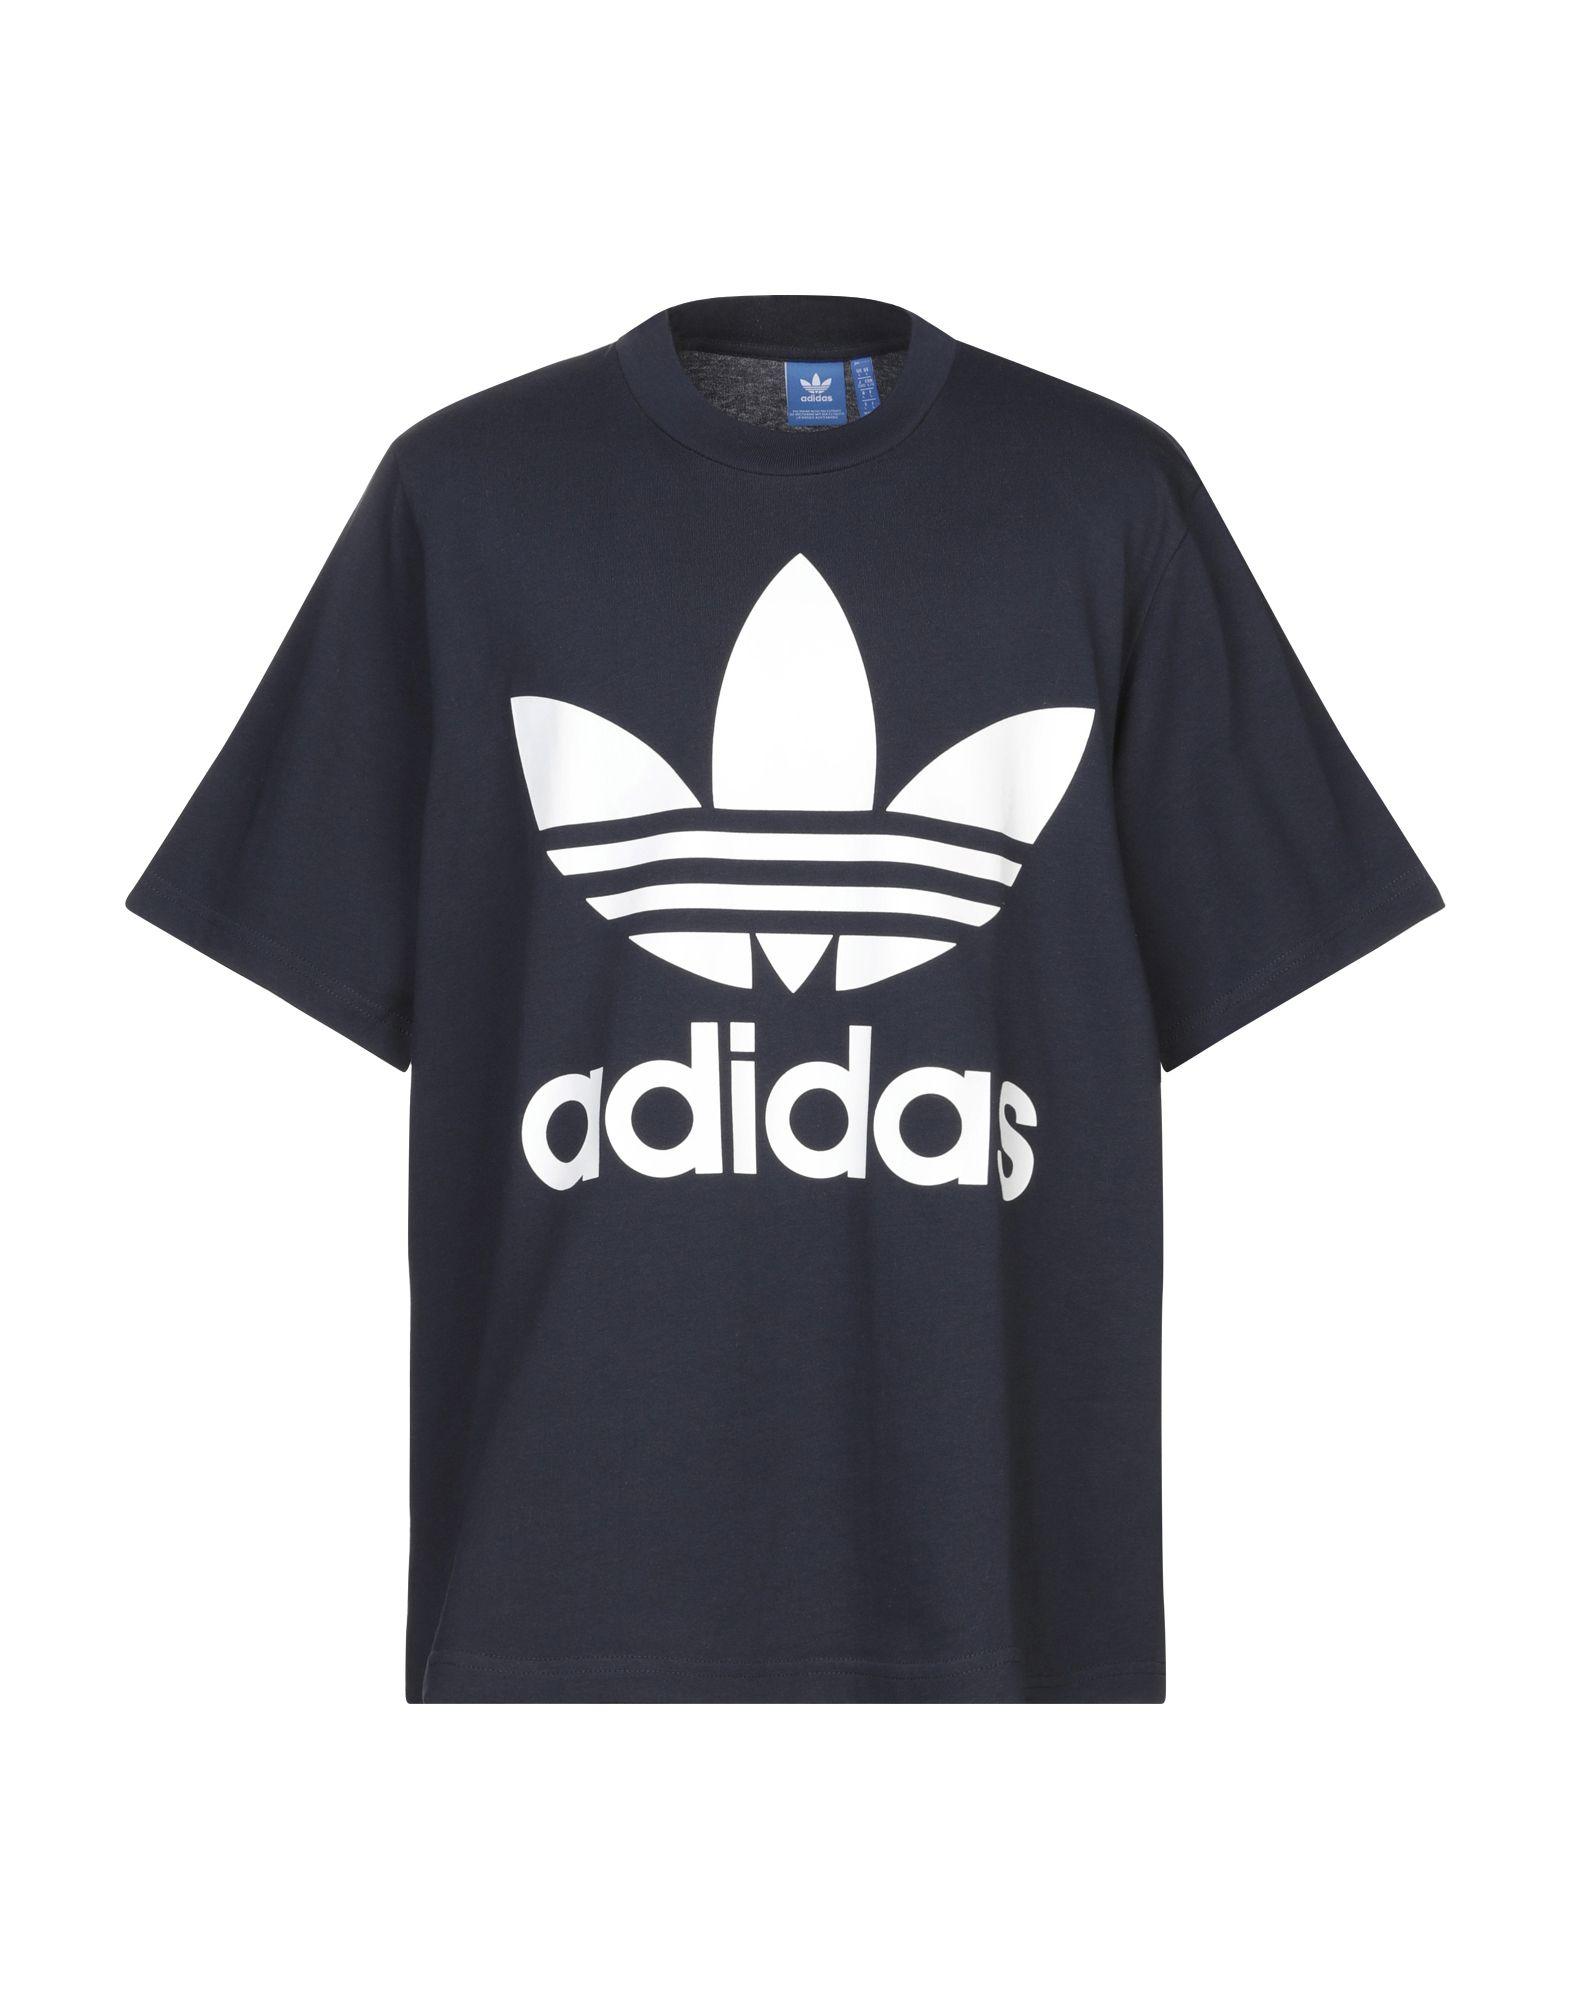 adidas Originals Cotton T-shirt in Dark Blue (Blue) for Men - Lyst